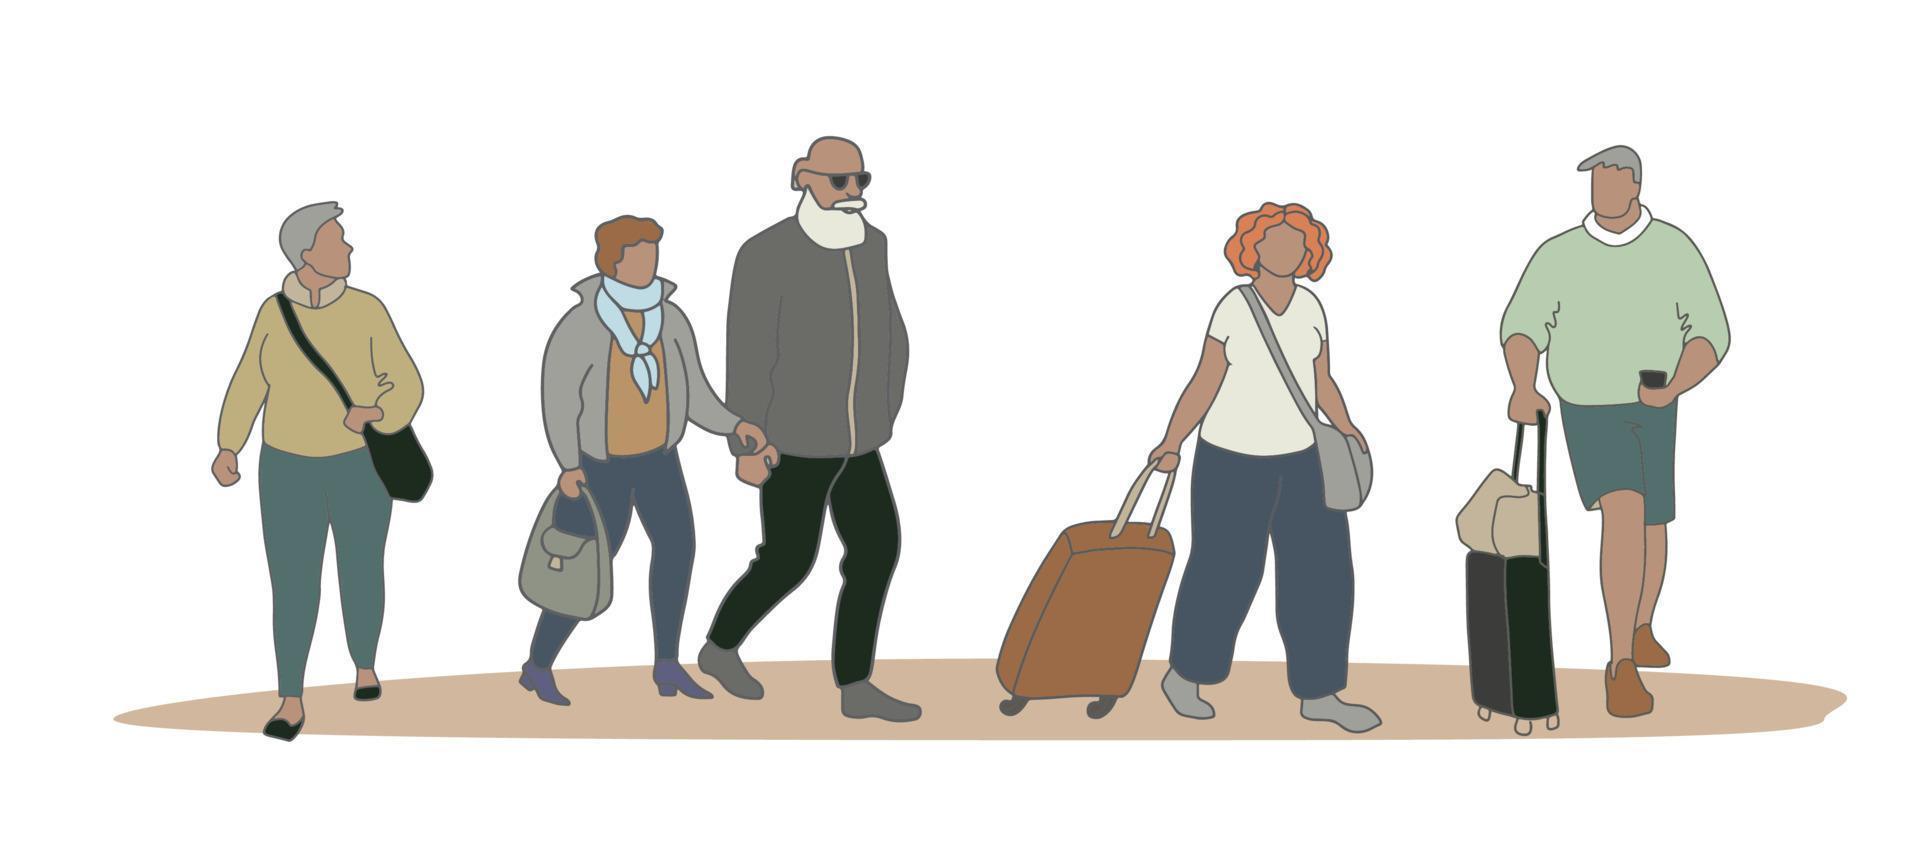 persone diverse che camminano per strada. persone con valigie e borse. illustrazione vettoriale di diversi cartoni animati uomini e donne di varie età e tipo di corpo isolati su bianco.